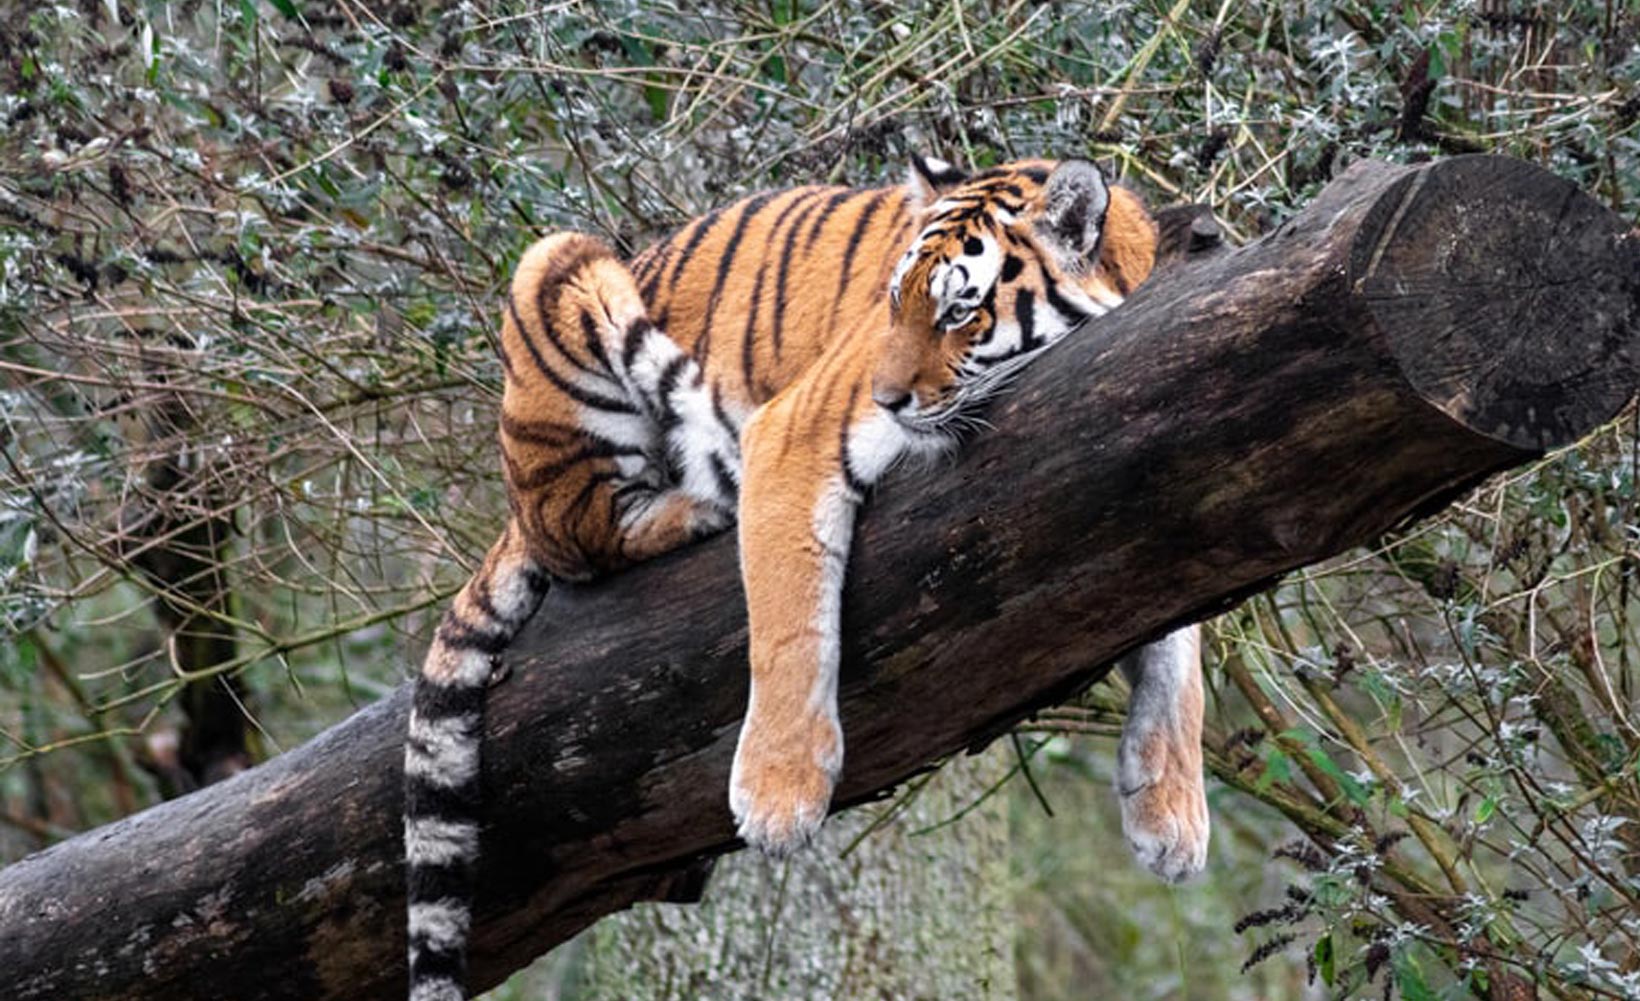 Internationaler Tag des Tigers: Kennen Sie diese Fakten über Tiger?